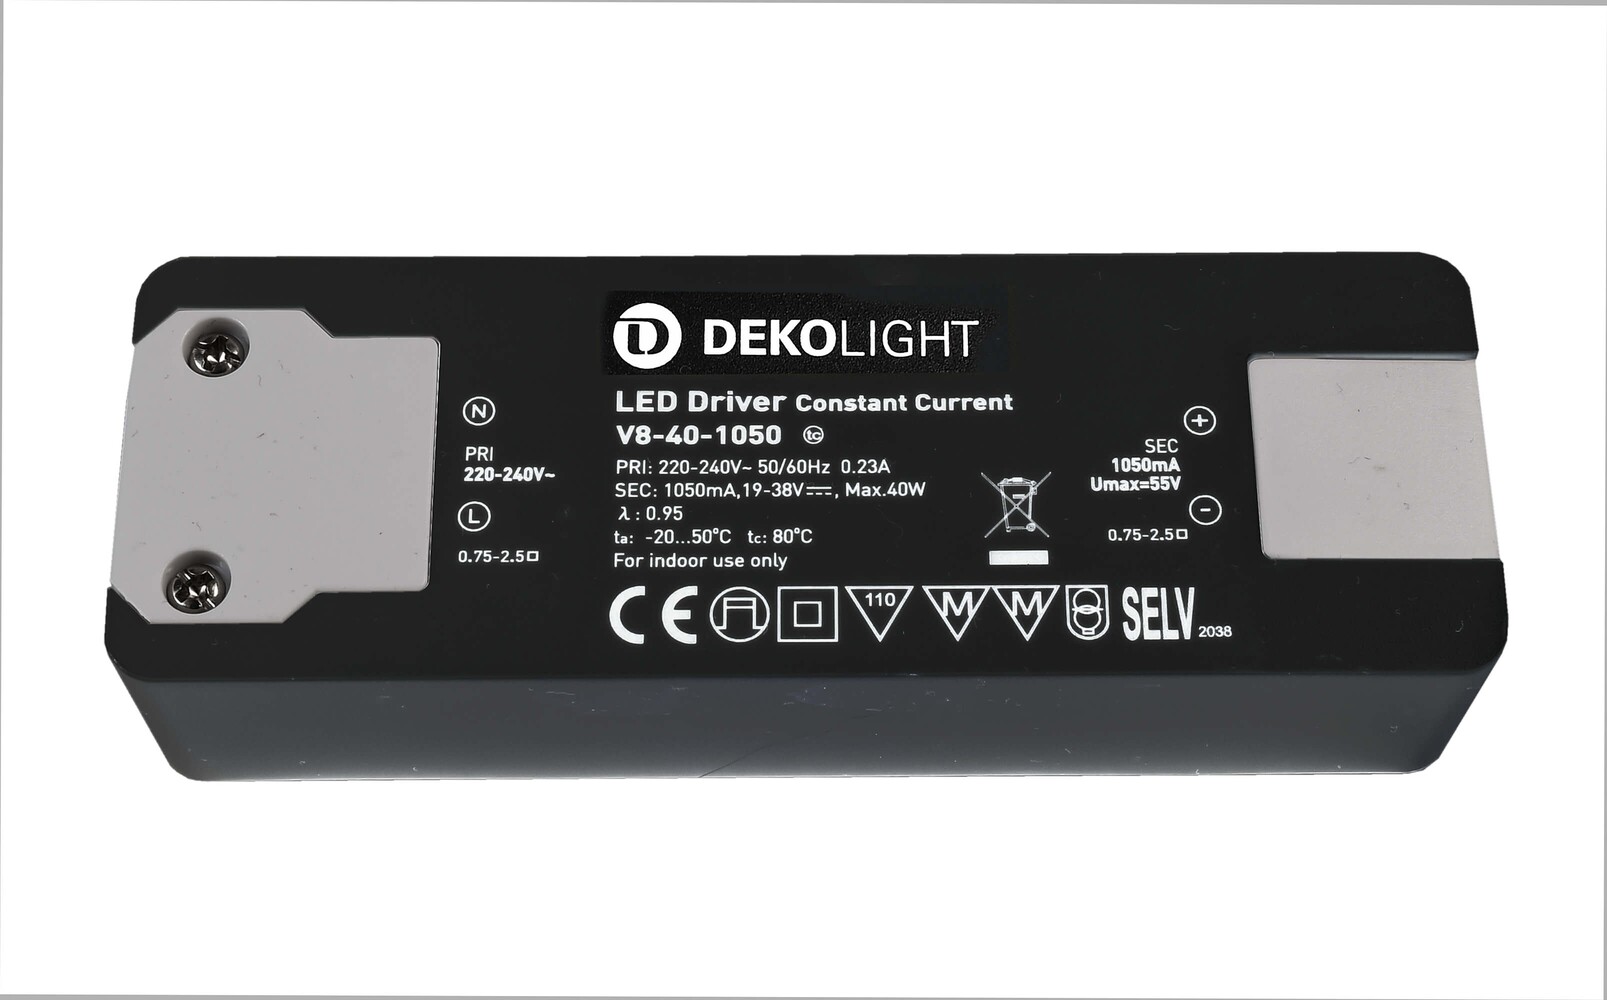 Hochwertiges, stromkonstantes LED-Netzteil von der Marke Deko-Light